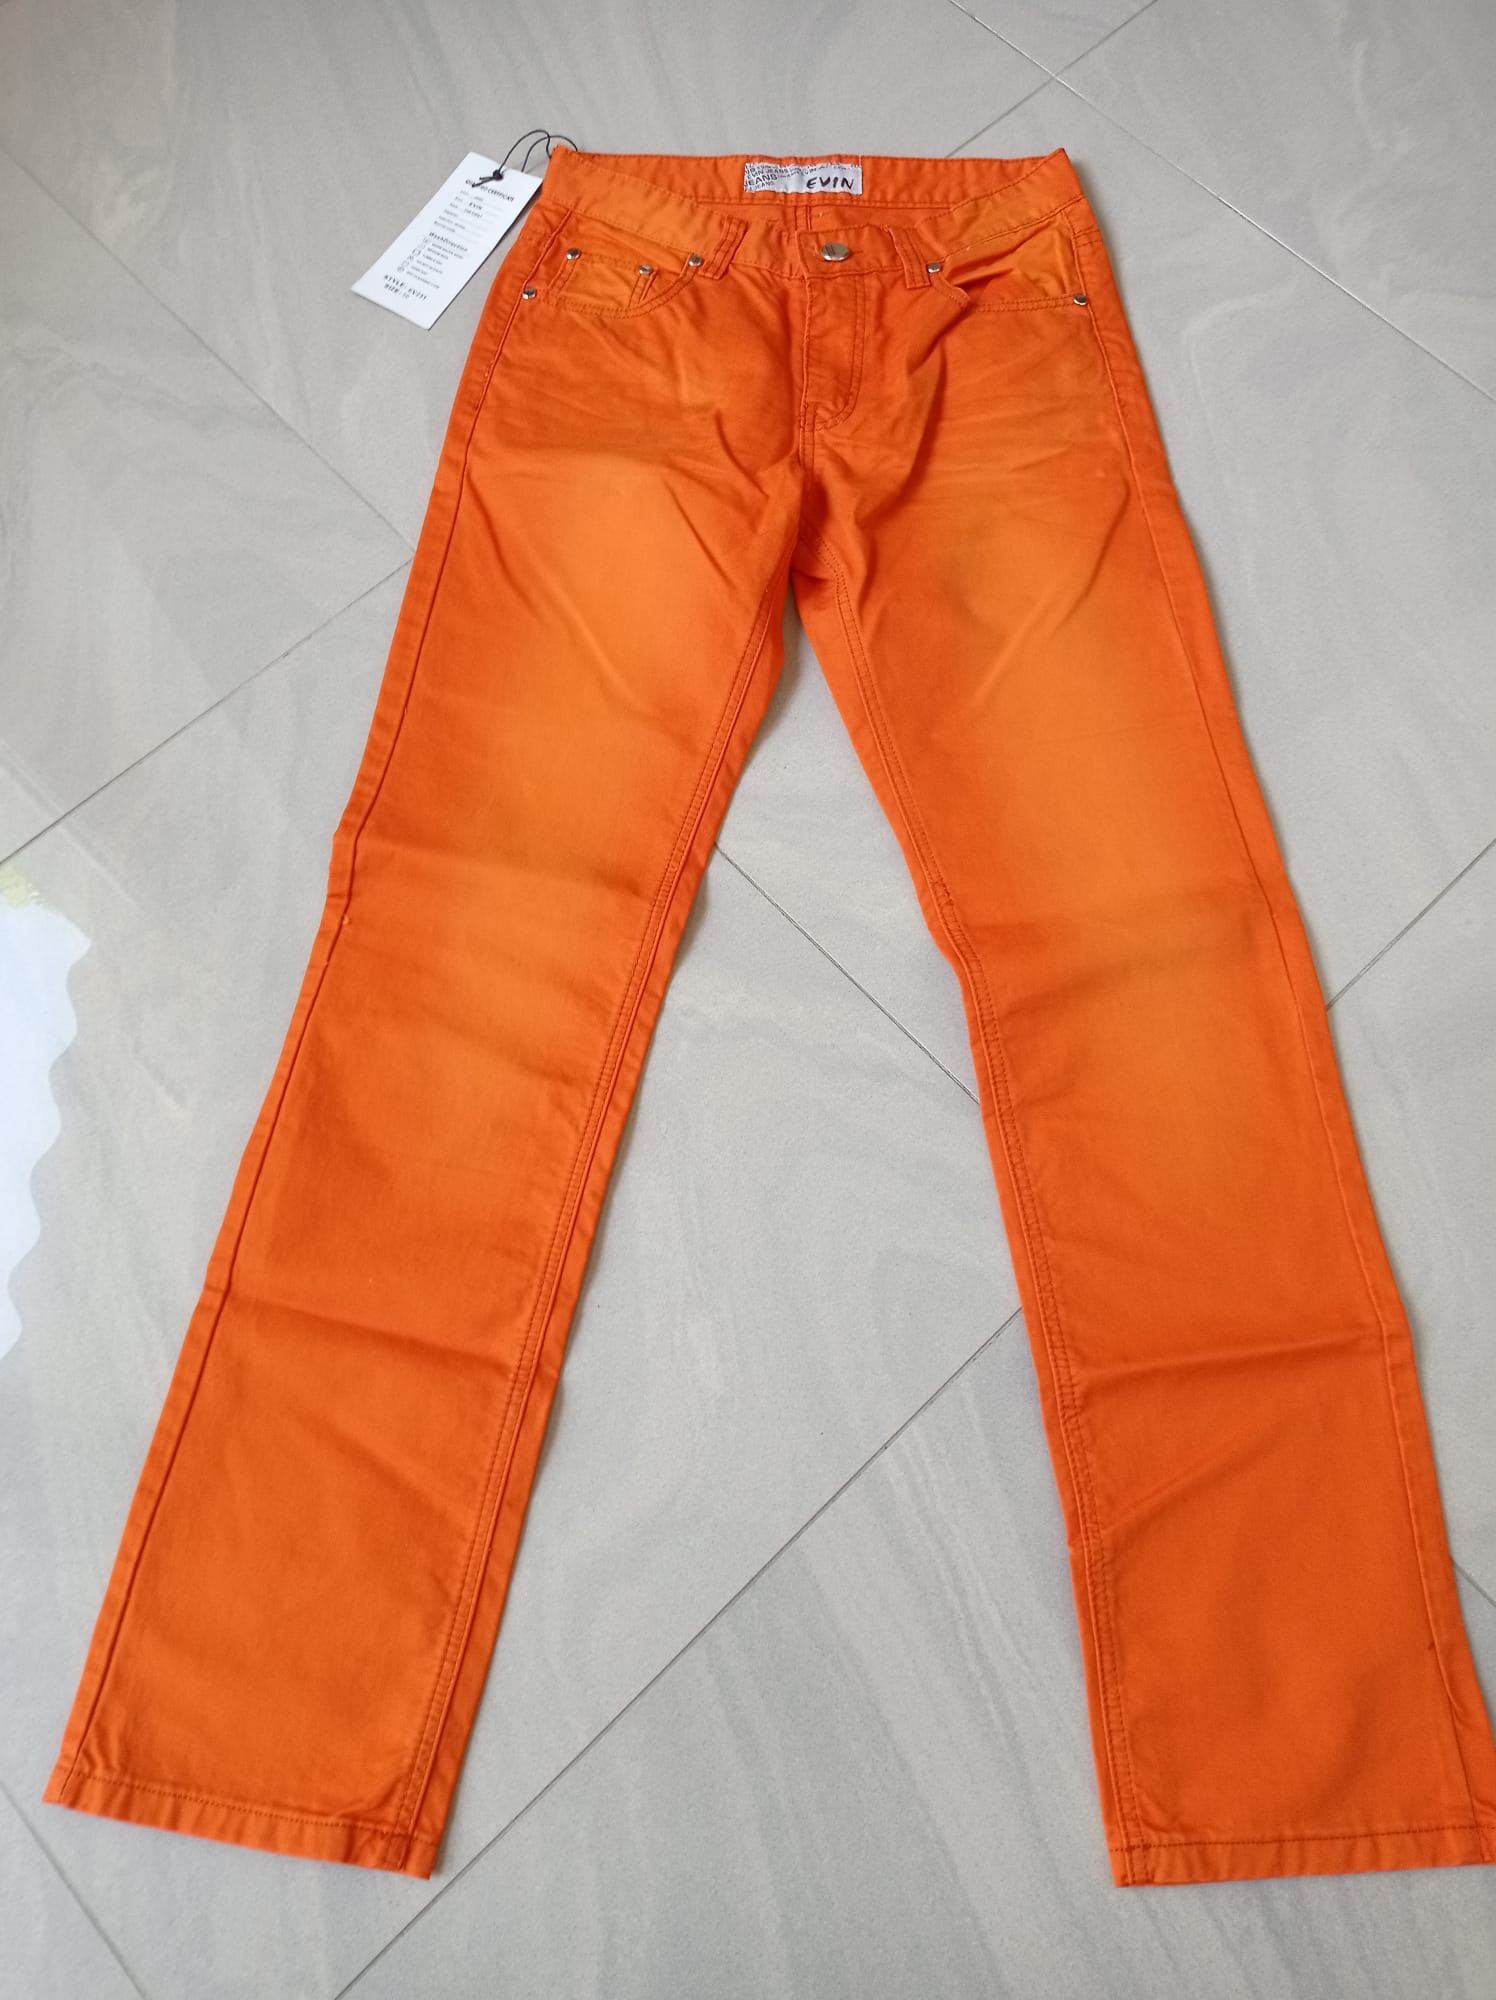 Nowe męskie pomarańczowe spodnie rozmiar 30